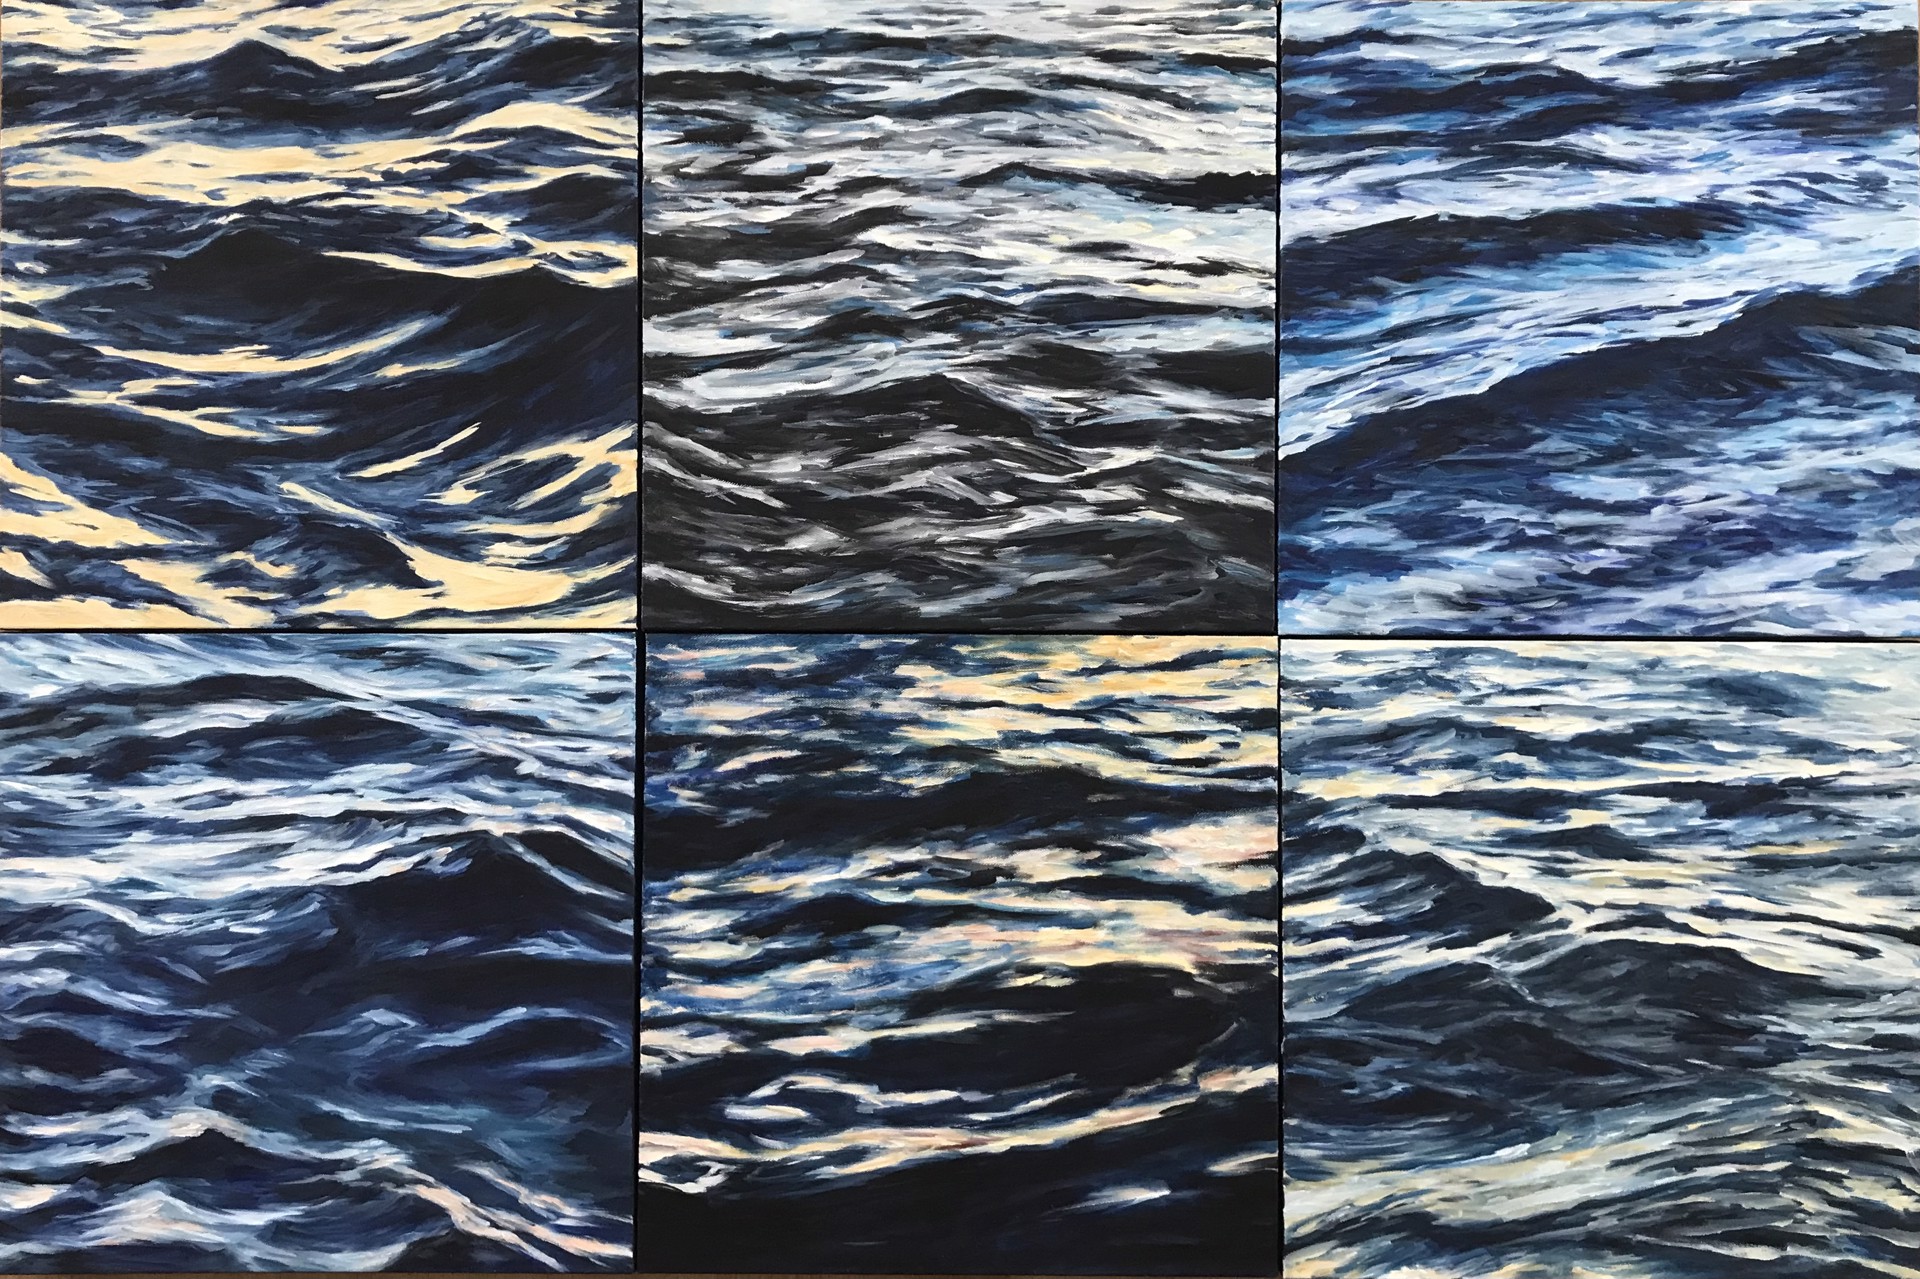 Lahaina Waves 6 by Valerie Eickmeier